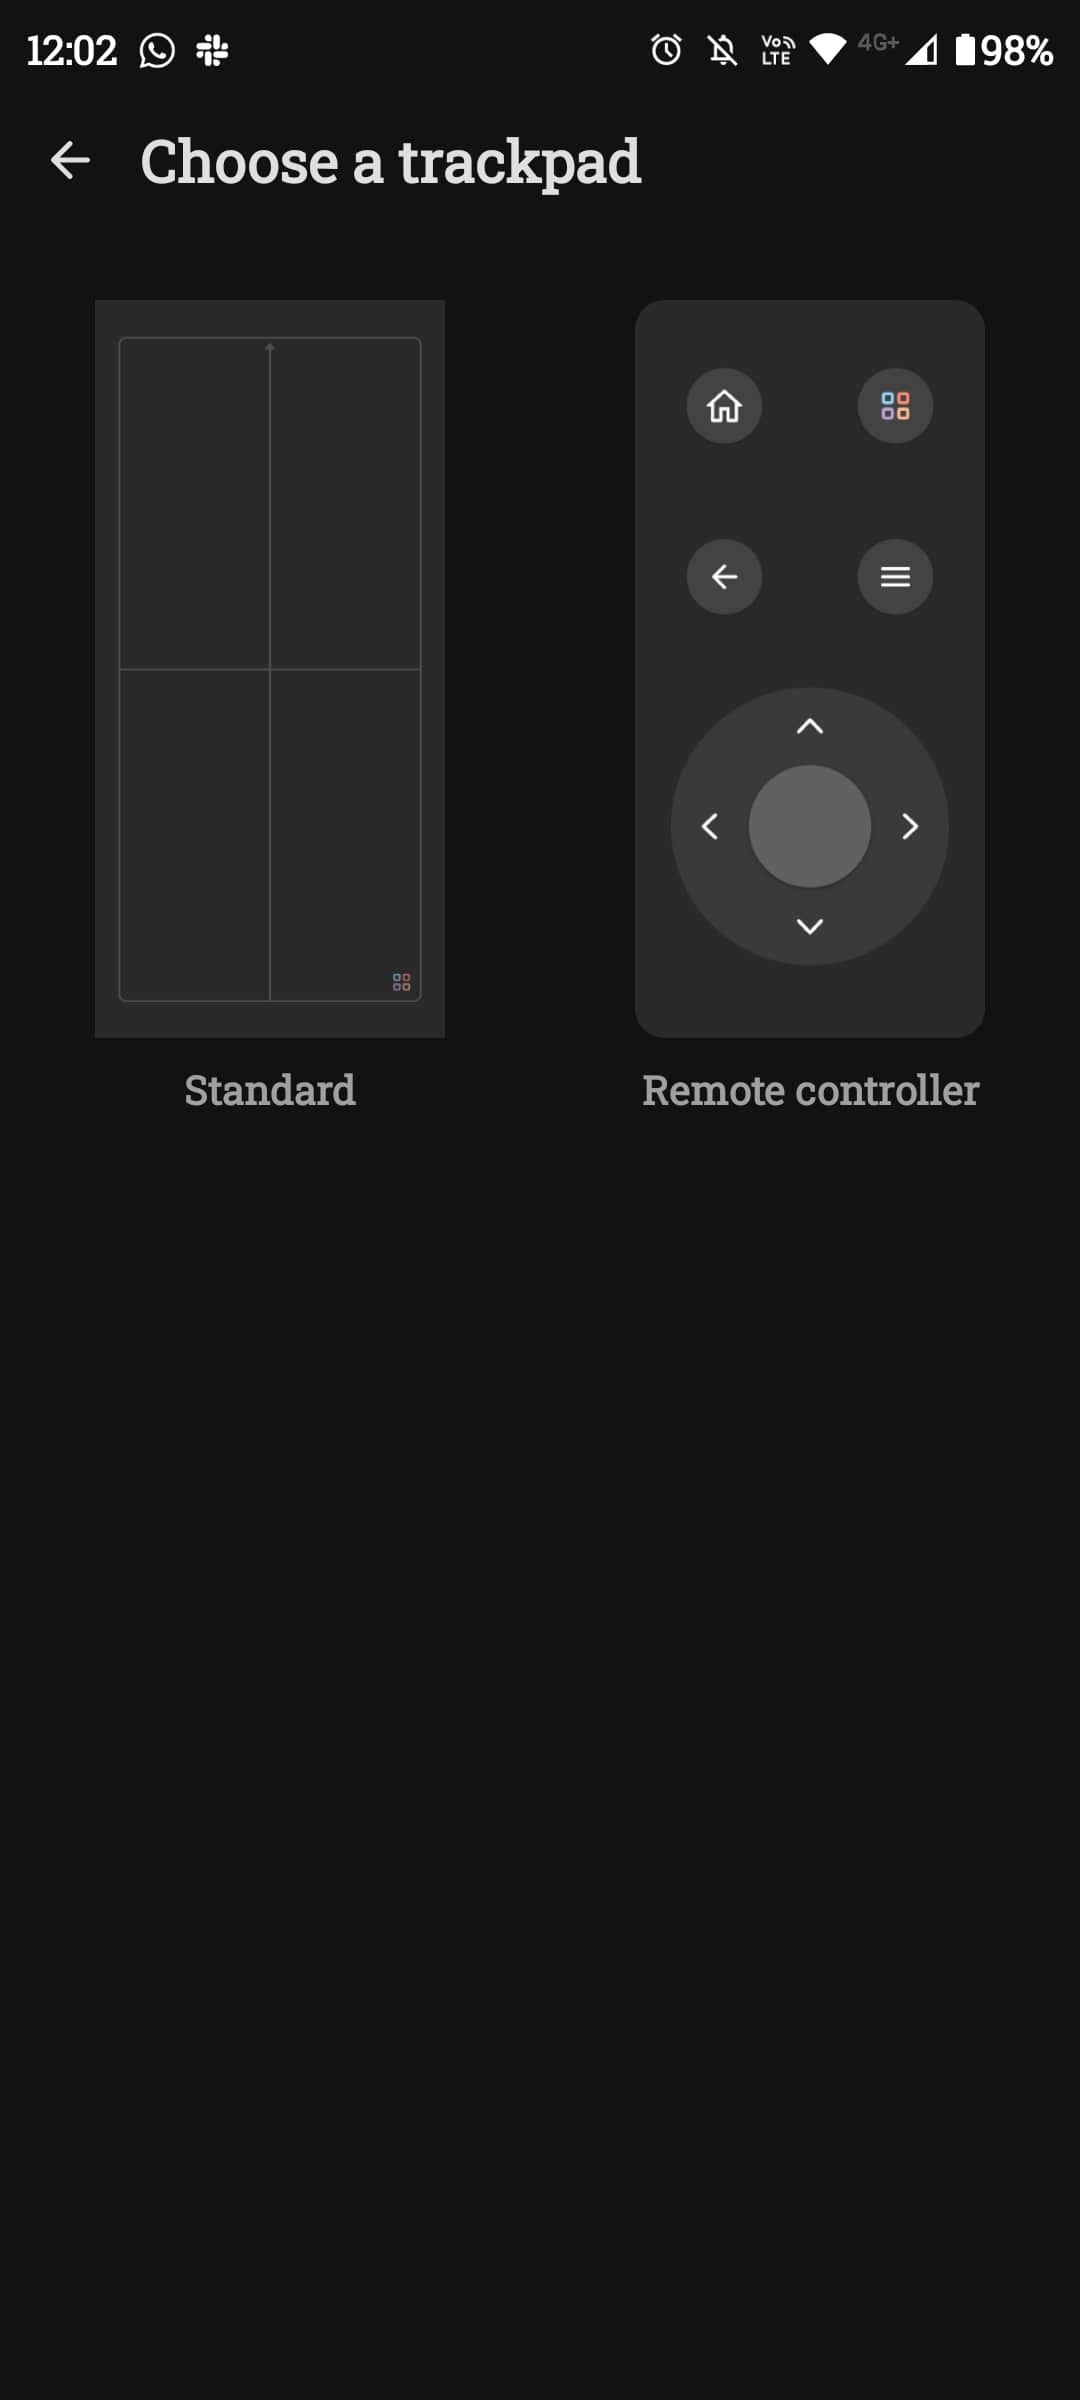 휴대전화 화면의 트랙패드 선택 옵션